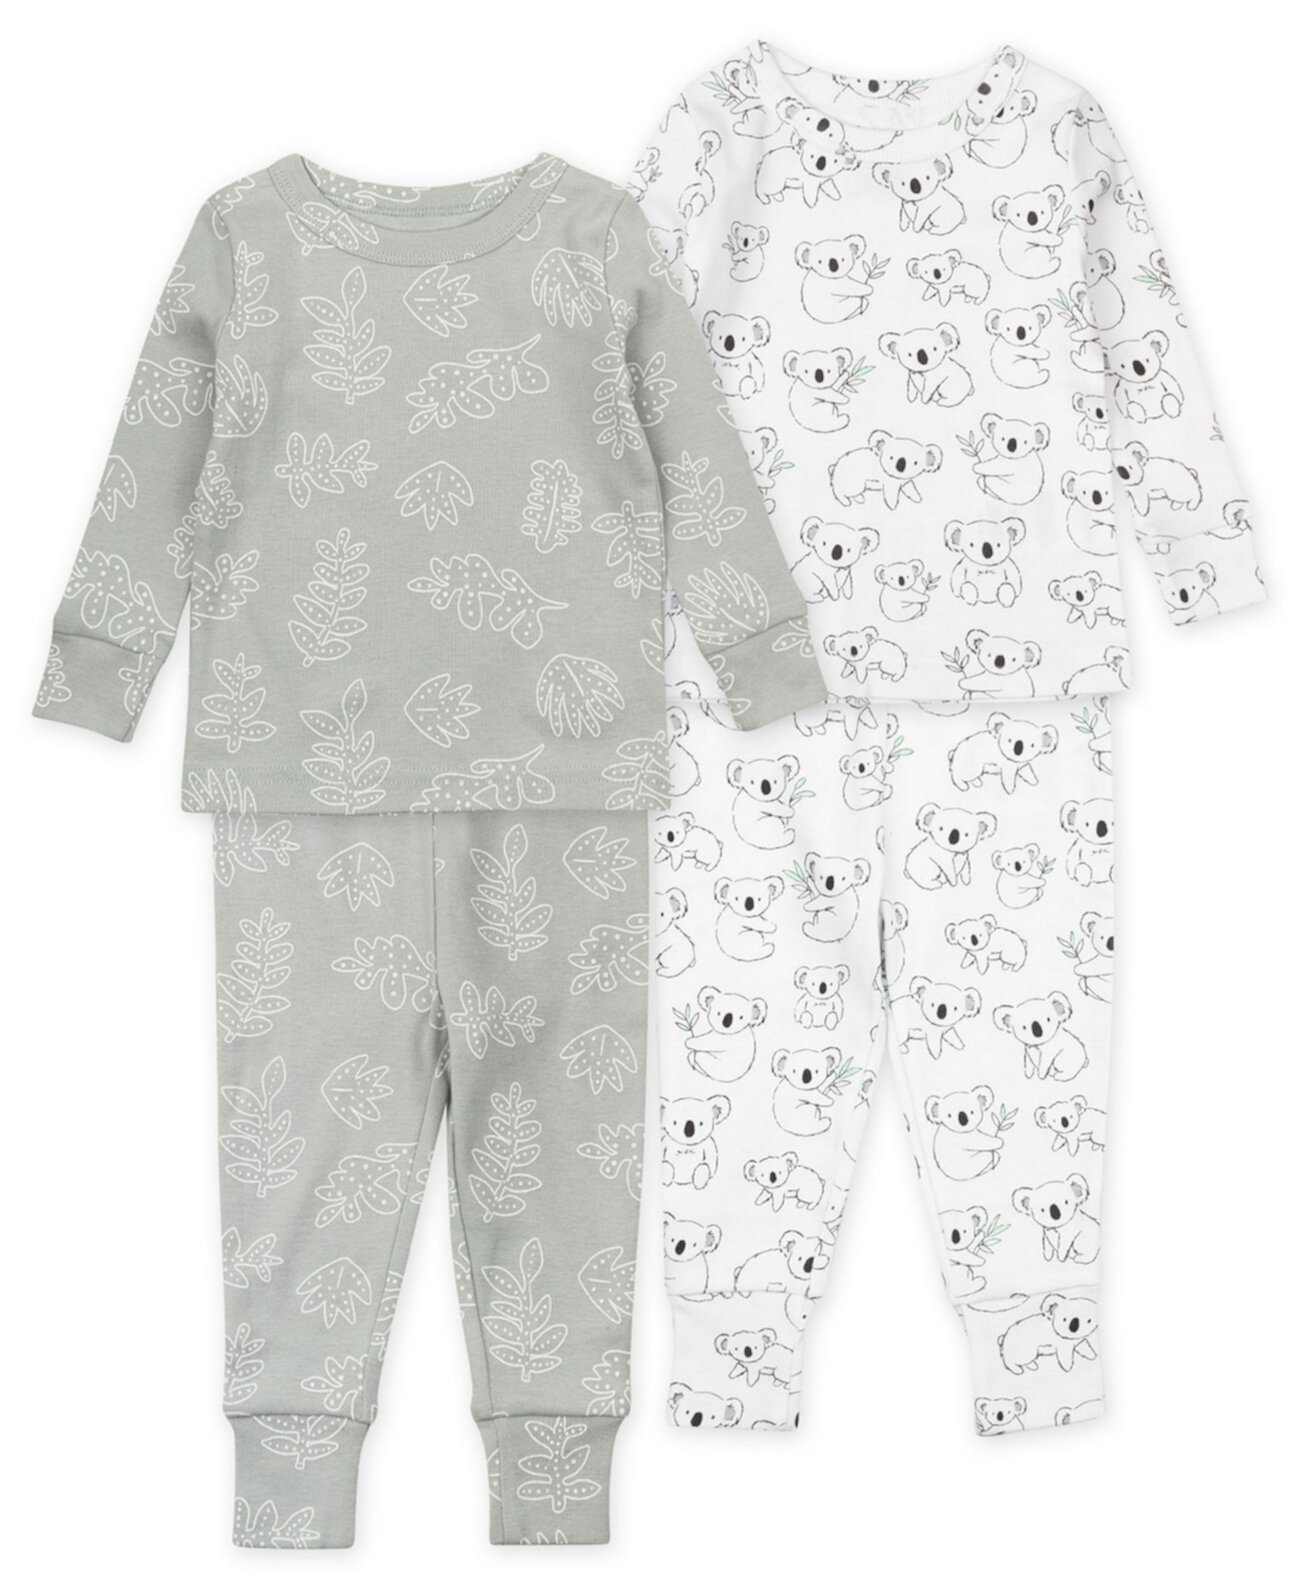 Пижамный комплект с коалой для маленьких мальчиков и девочек, 4 предмета Mac & Moon